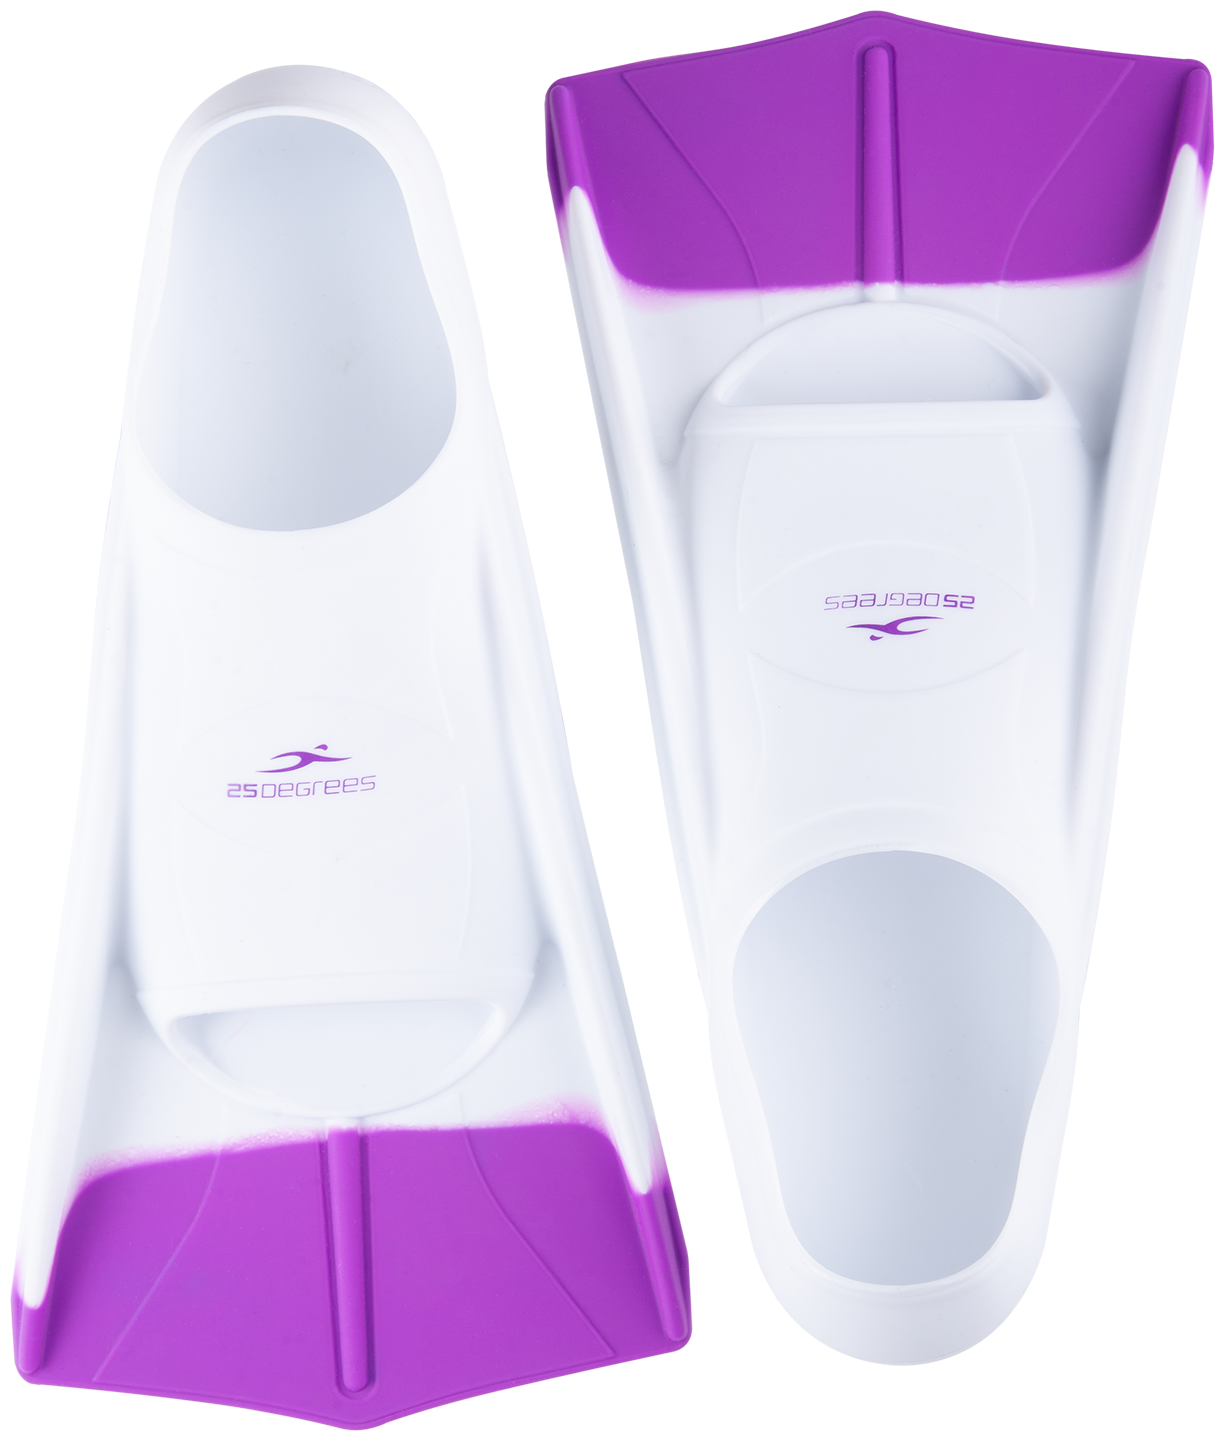 Ласты тренировочные 25degrees Pooljet White/purple, M